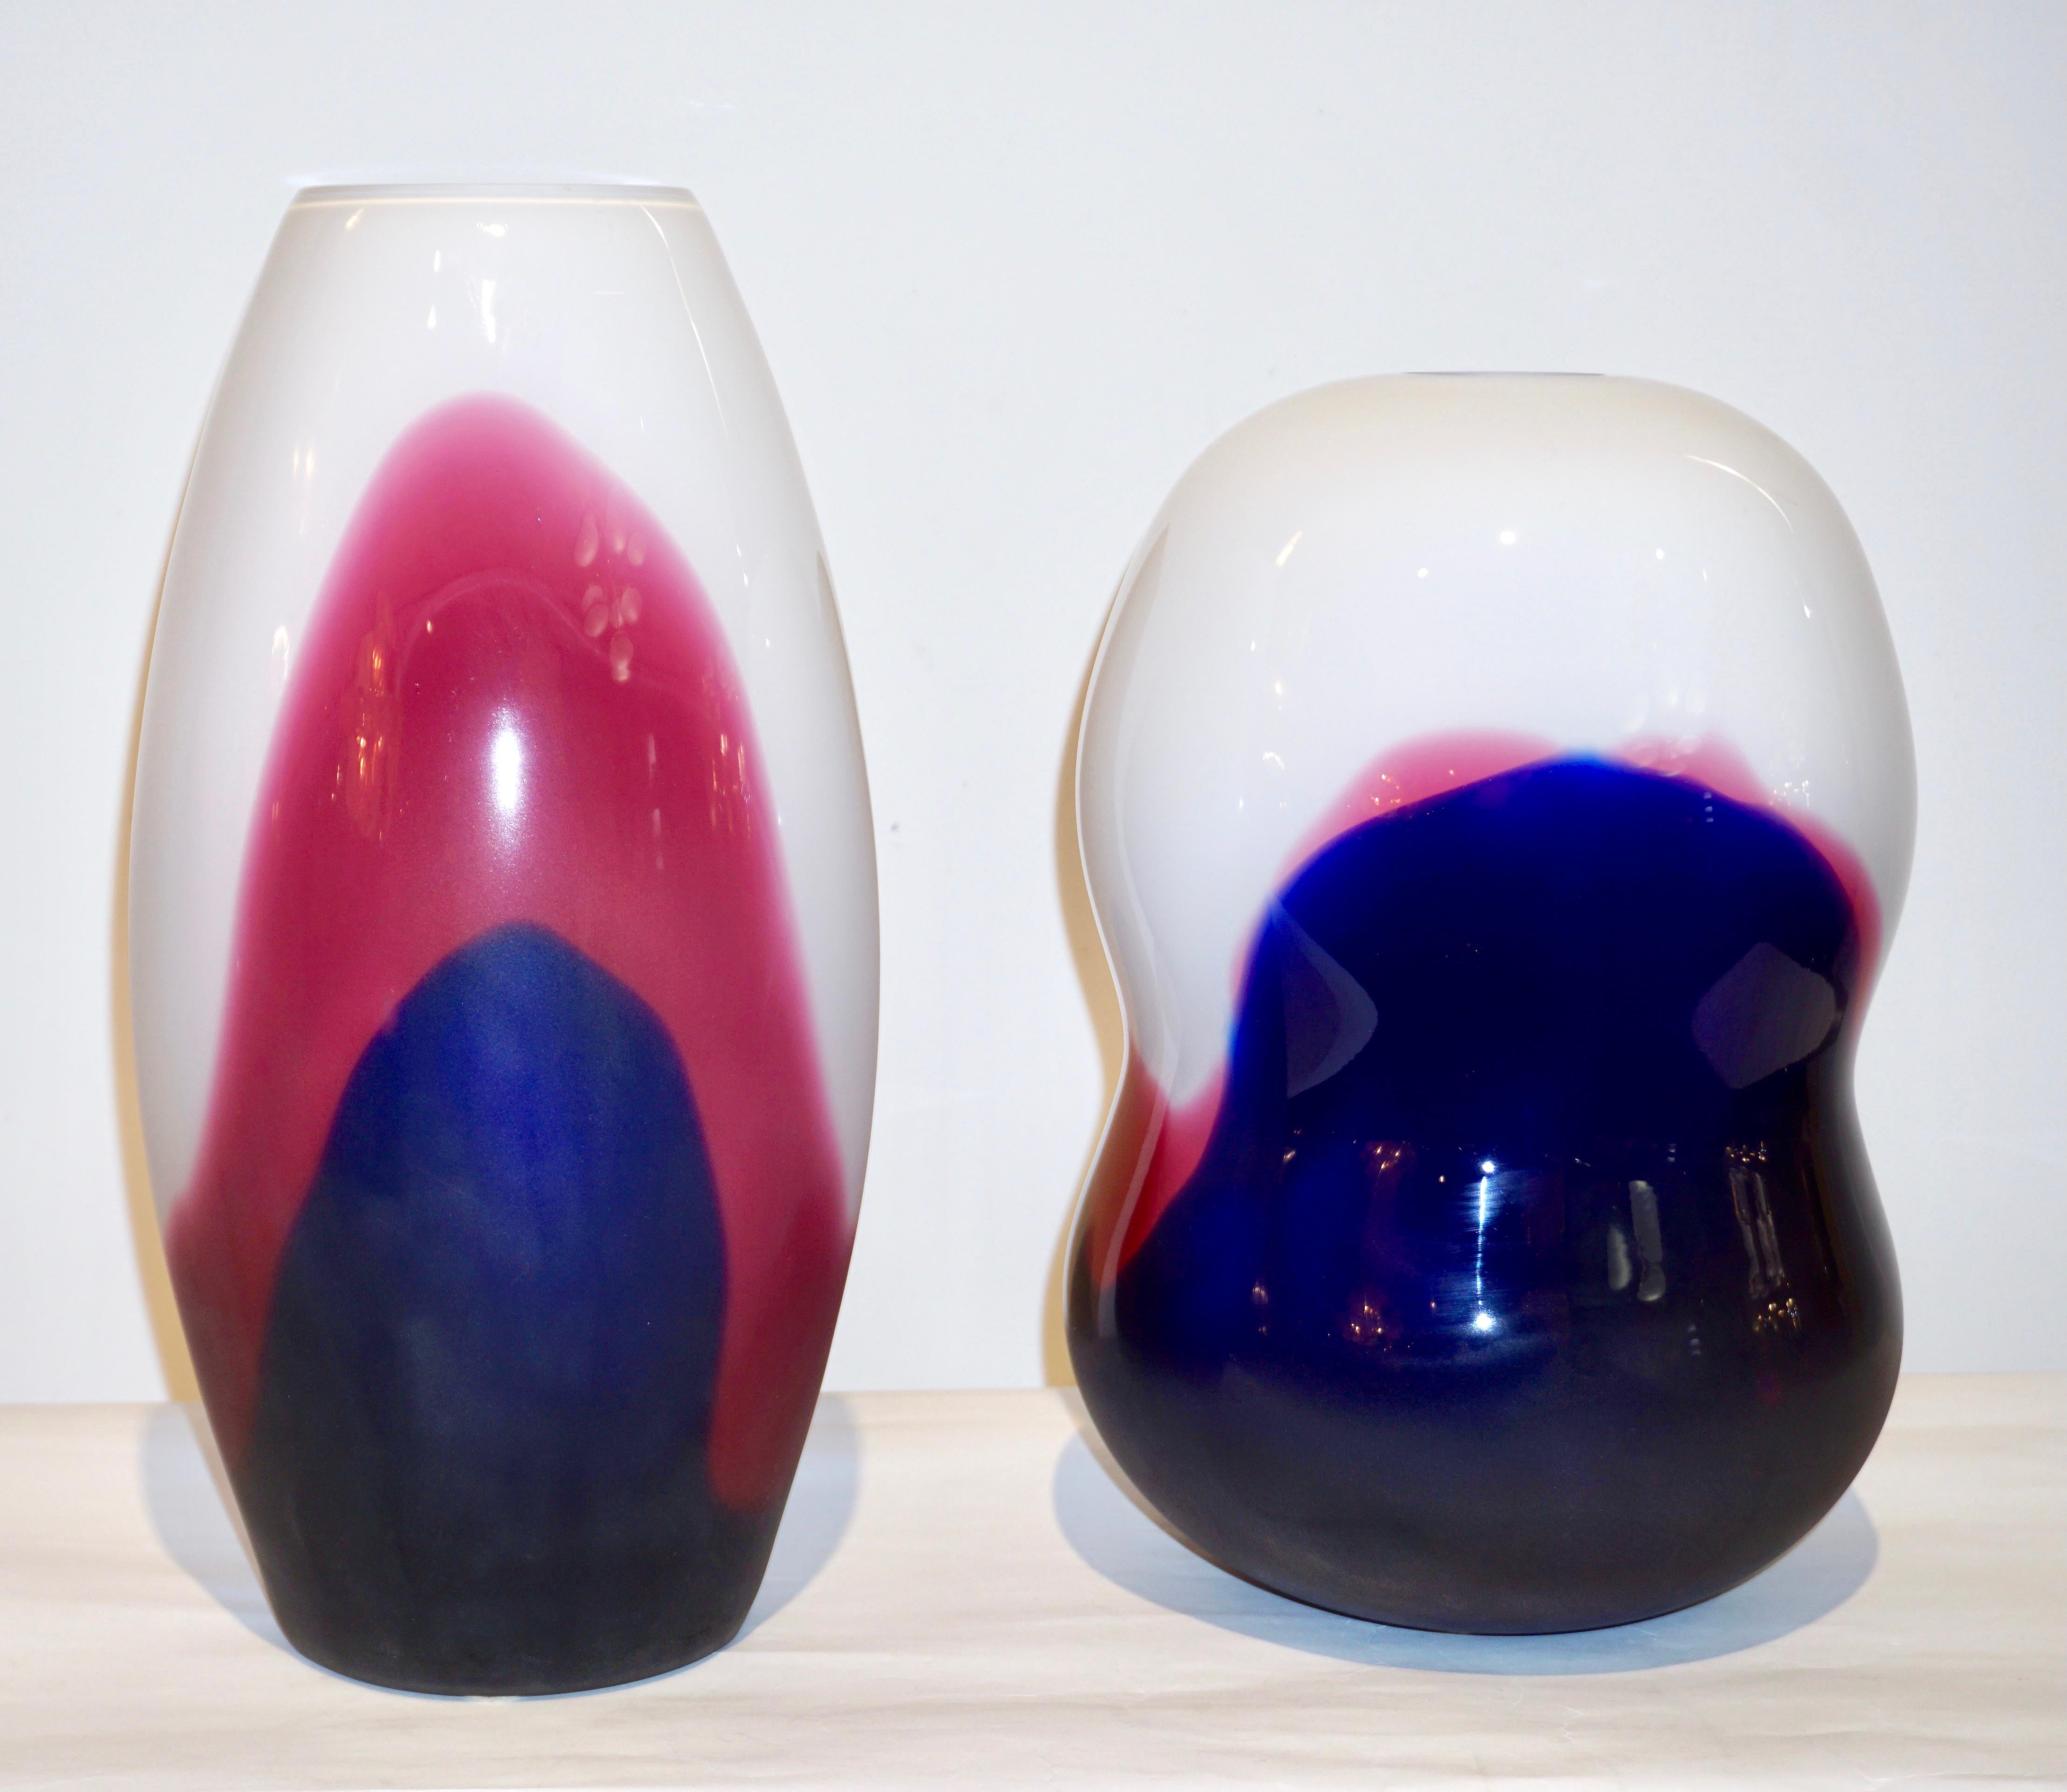 Zwei Vasen aus mundgeblasenem Muranoglas, signiert Formia, exklusiv für Roche Bobois Paris geschaffen. Das sehr moderne, minimalistische Design und die Ausführung bestechen durch die luxuriöse Qualität des Glases, das an Emaille erinnert. Mehrere